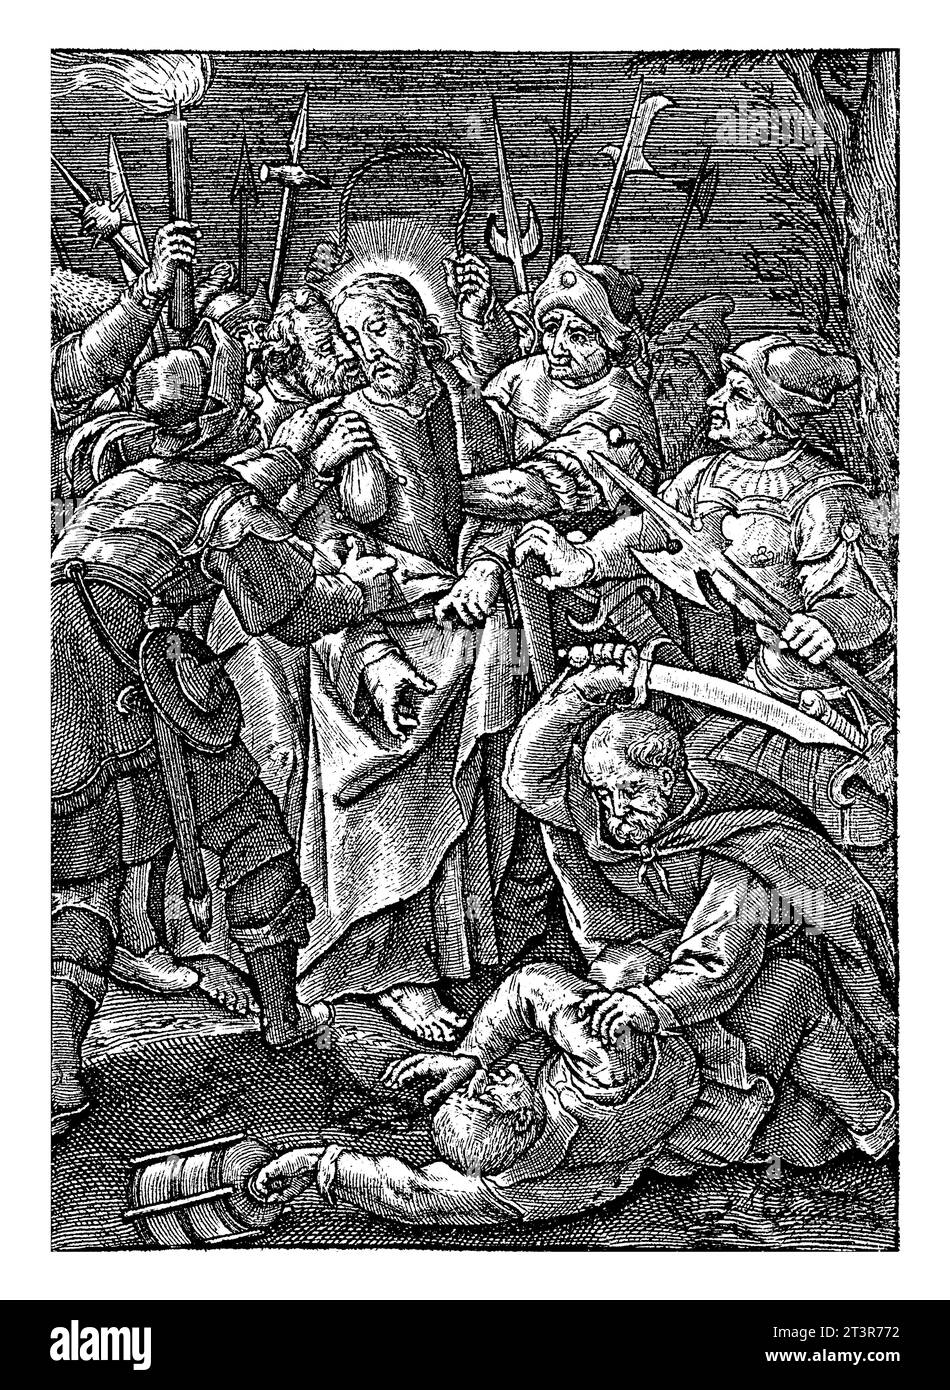 Giuda bacio e arresto di Cristo, Hieronymus Wierix, 1563 - prima del 1619 Giuda bacia Cristo sulla guancia. I soldati lo circondano e lo arrestano. Foto Stock